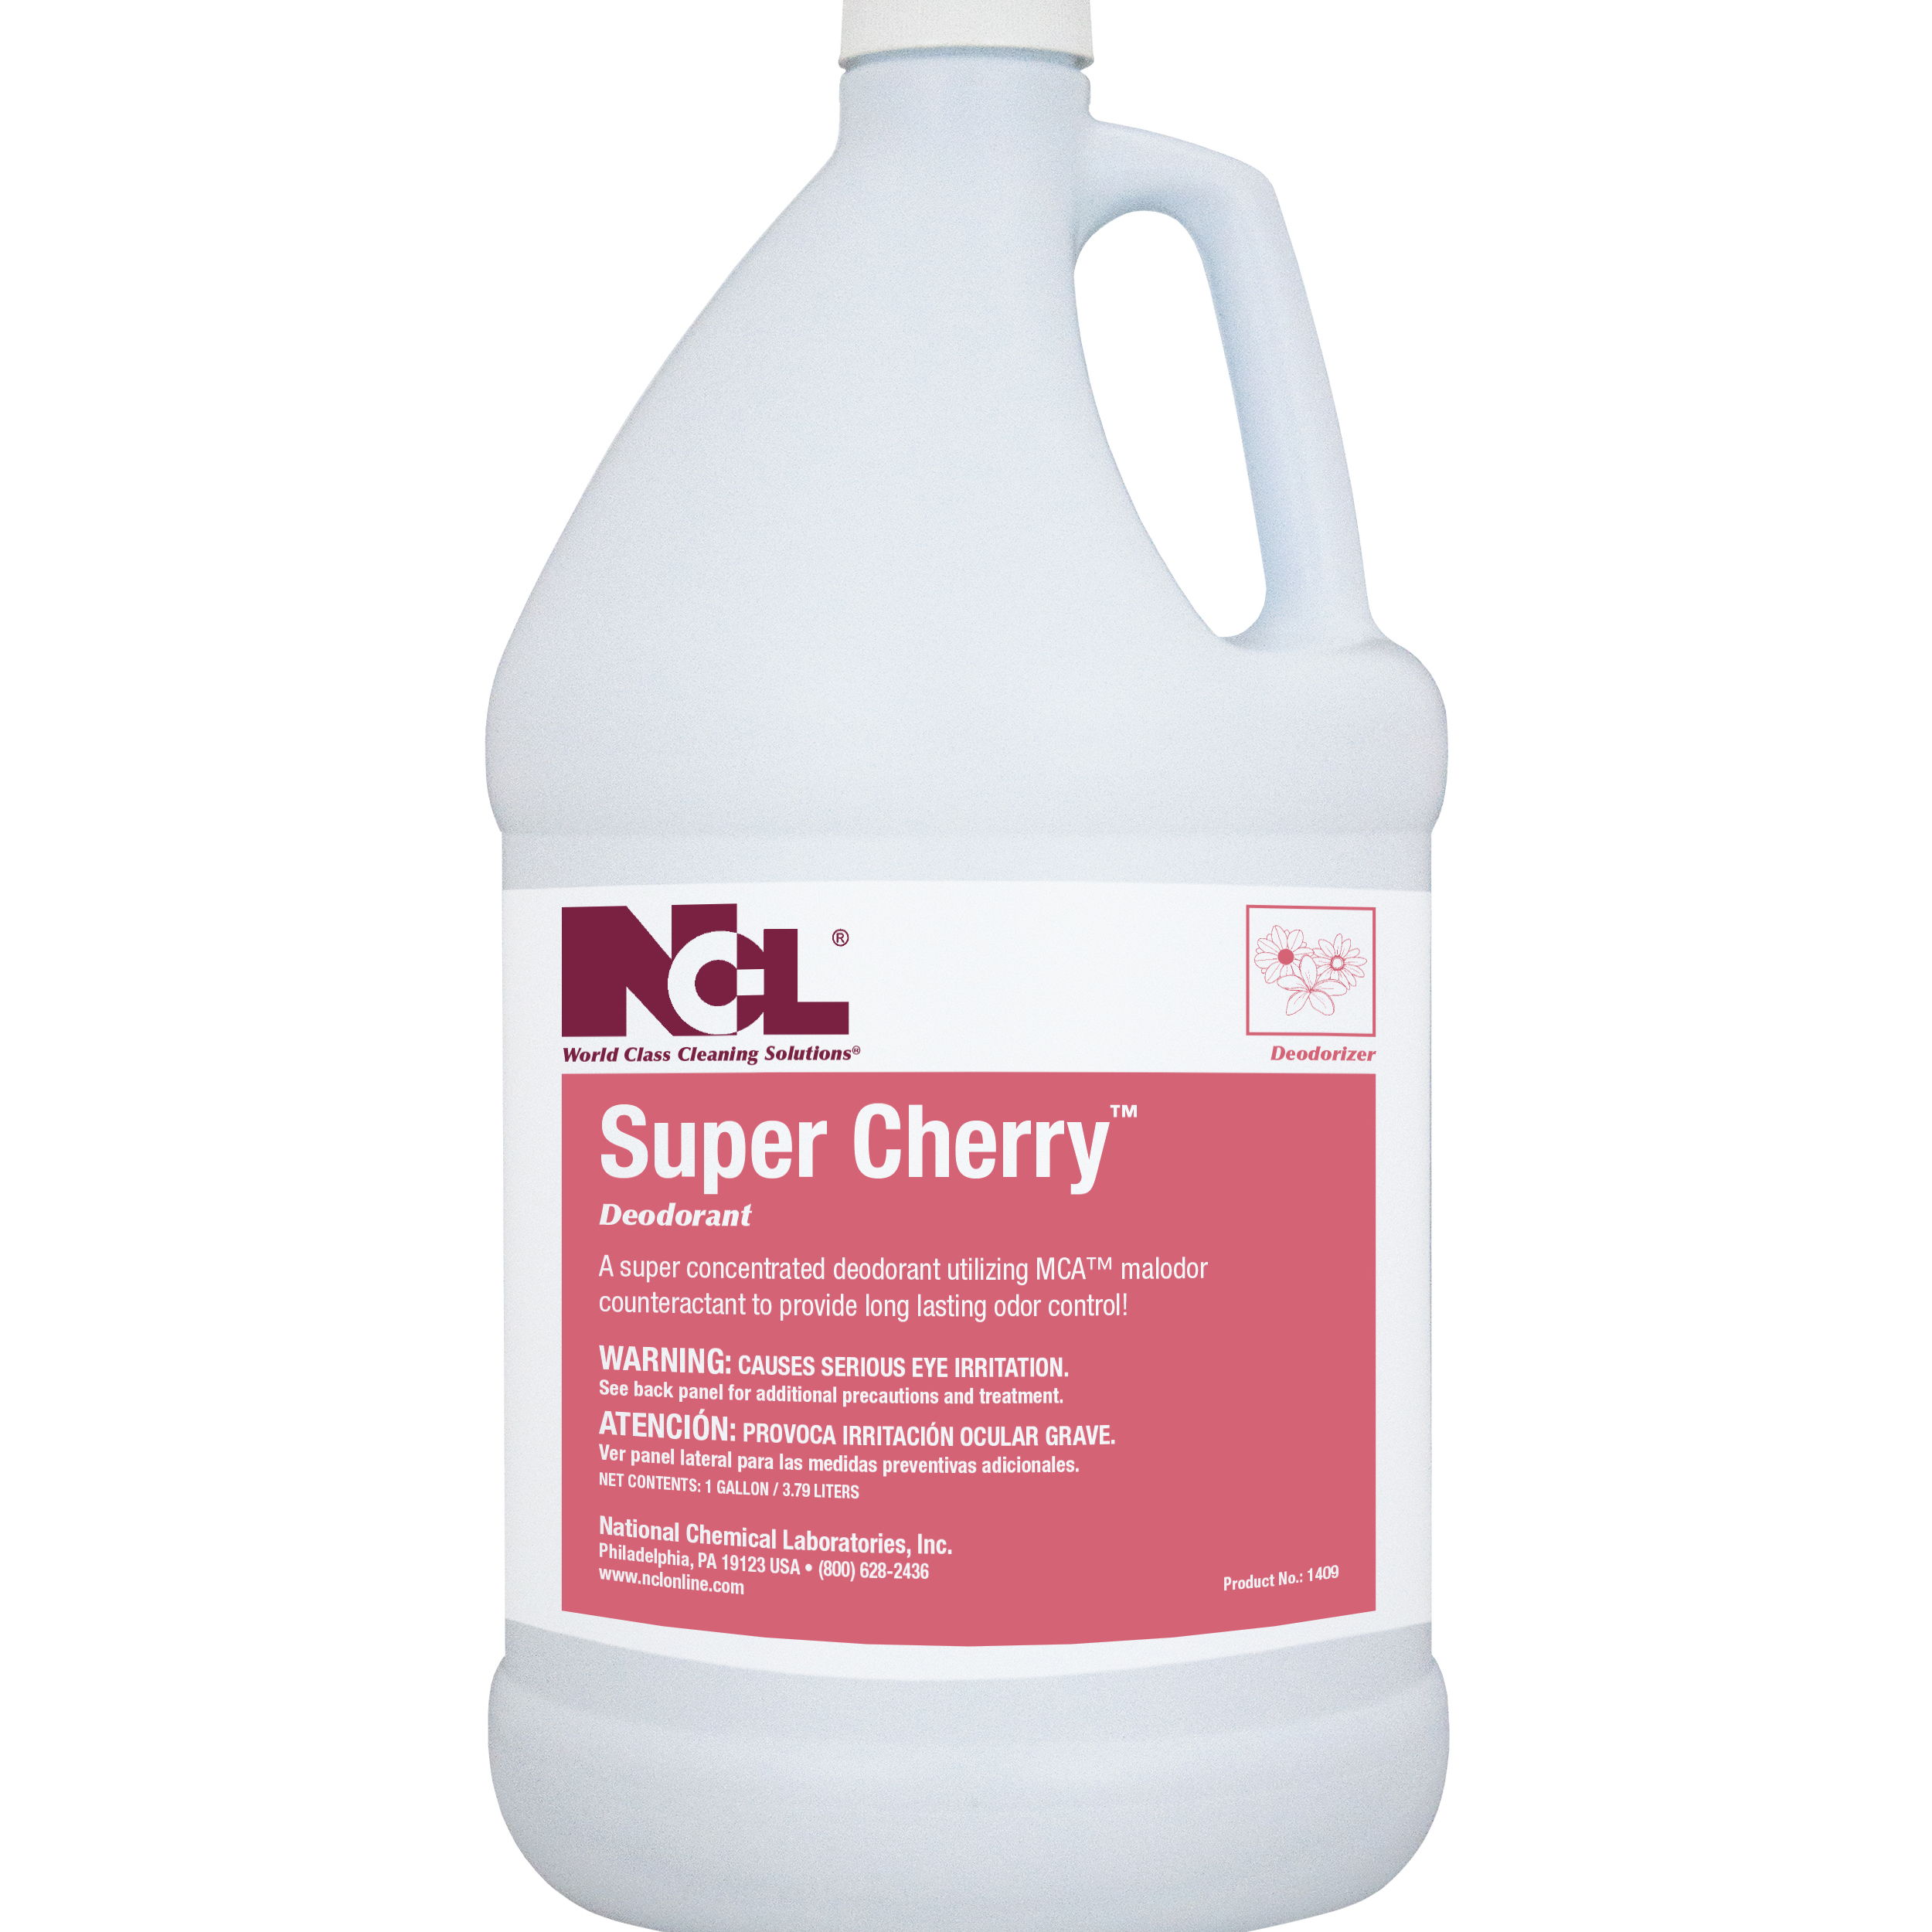  SUPER CHERRY Deodorant 4/1 Gal. Case (NCL1409-29) 